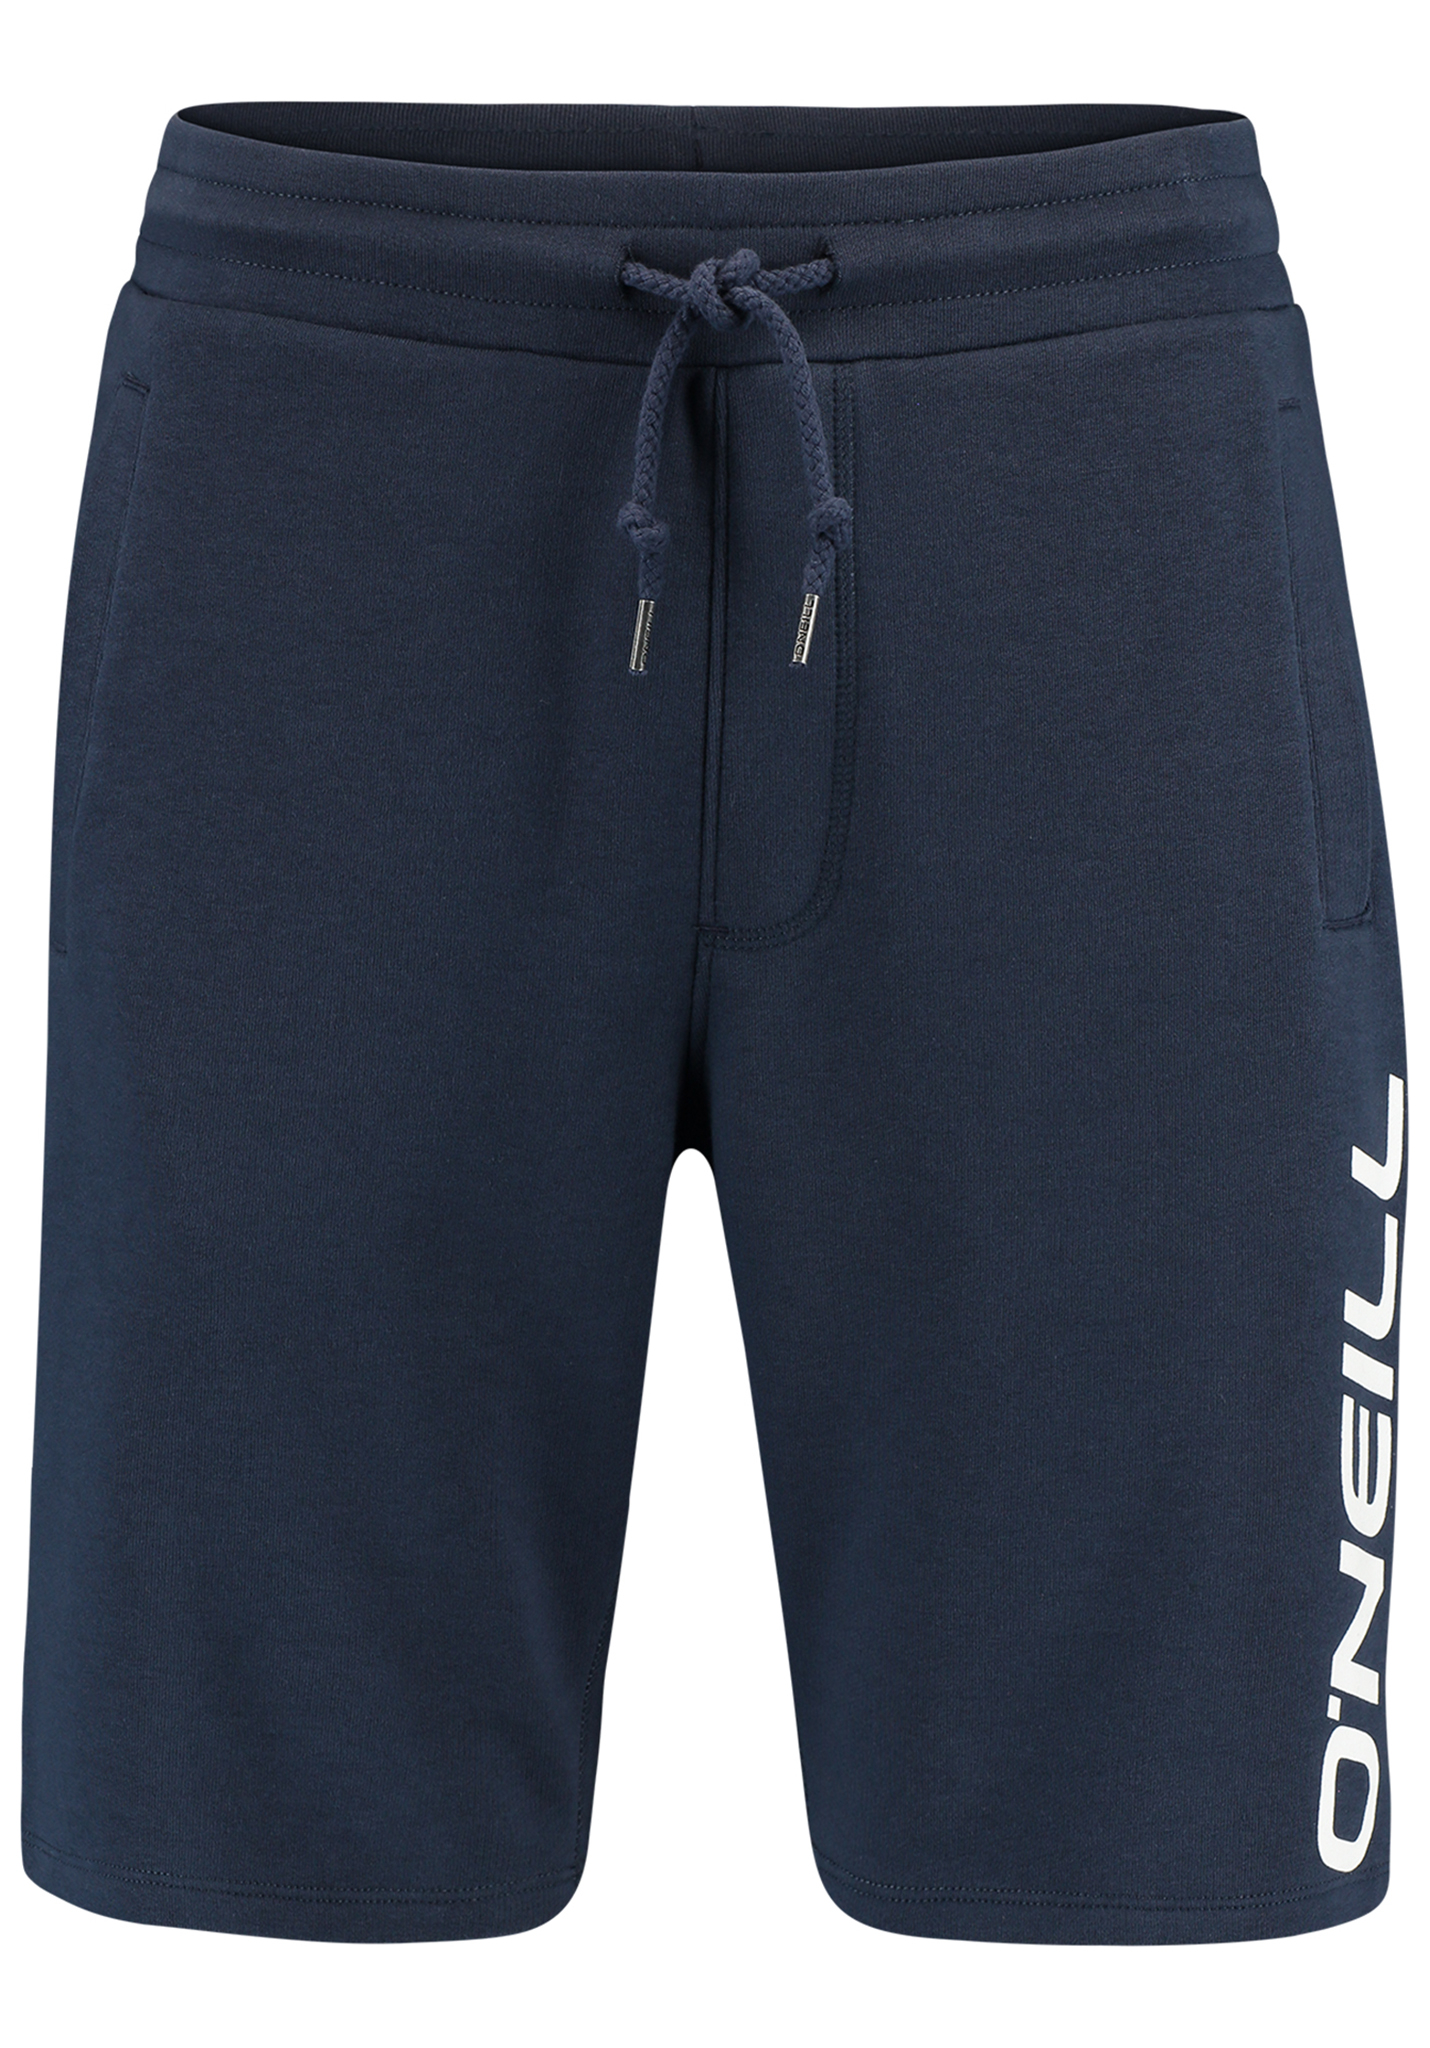 O'Neill Jogger Shorts Shorts ink blue XXL